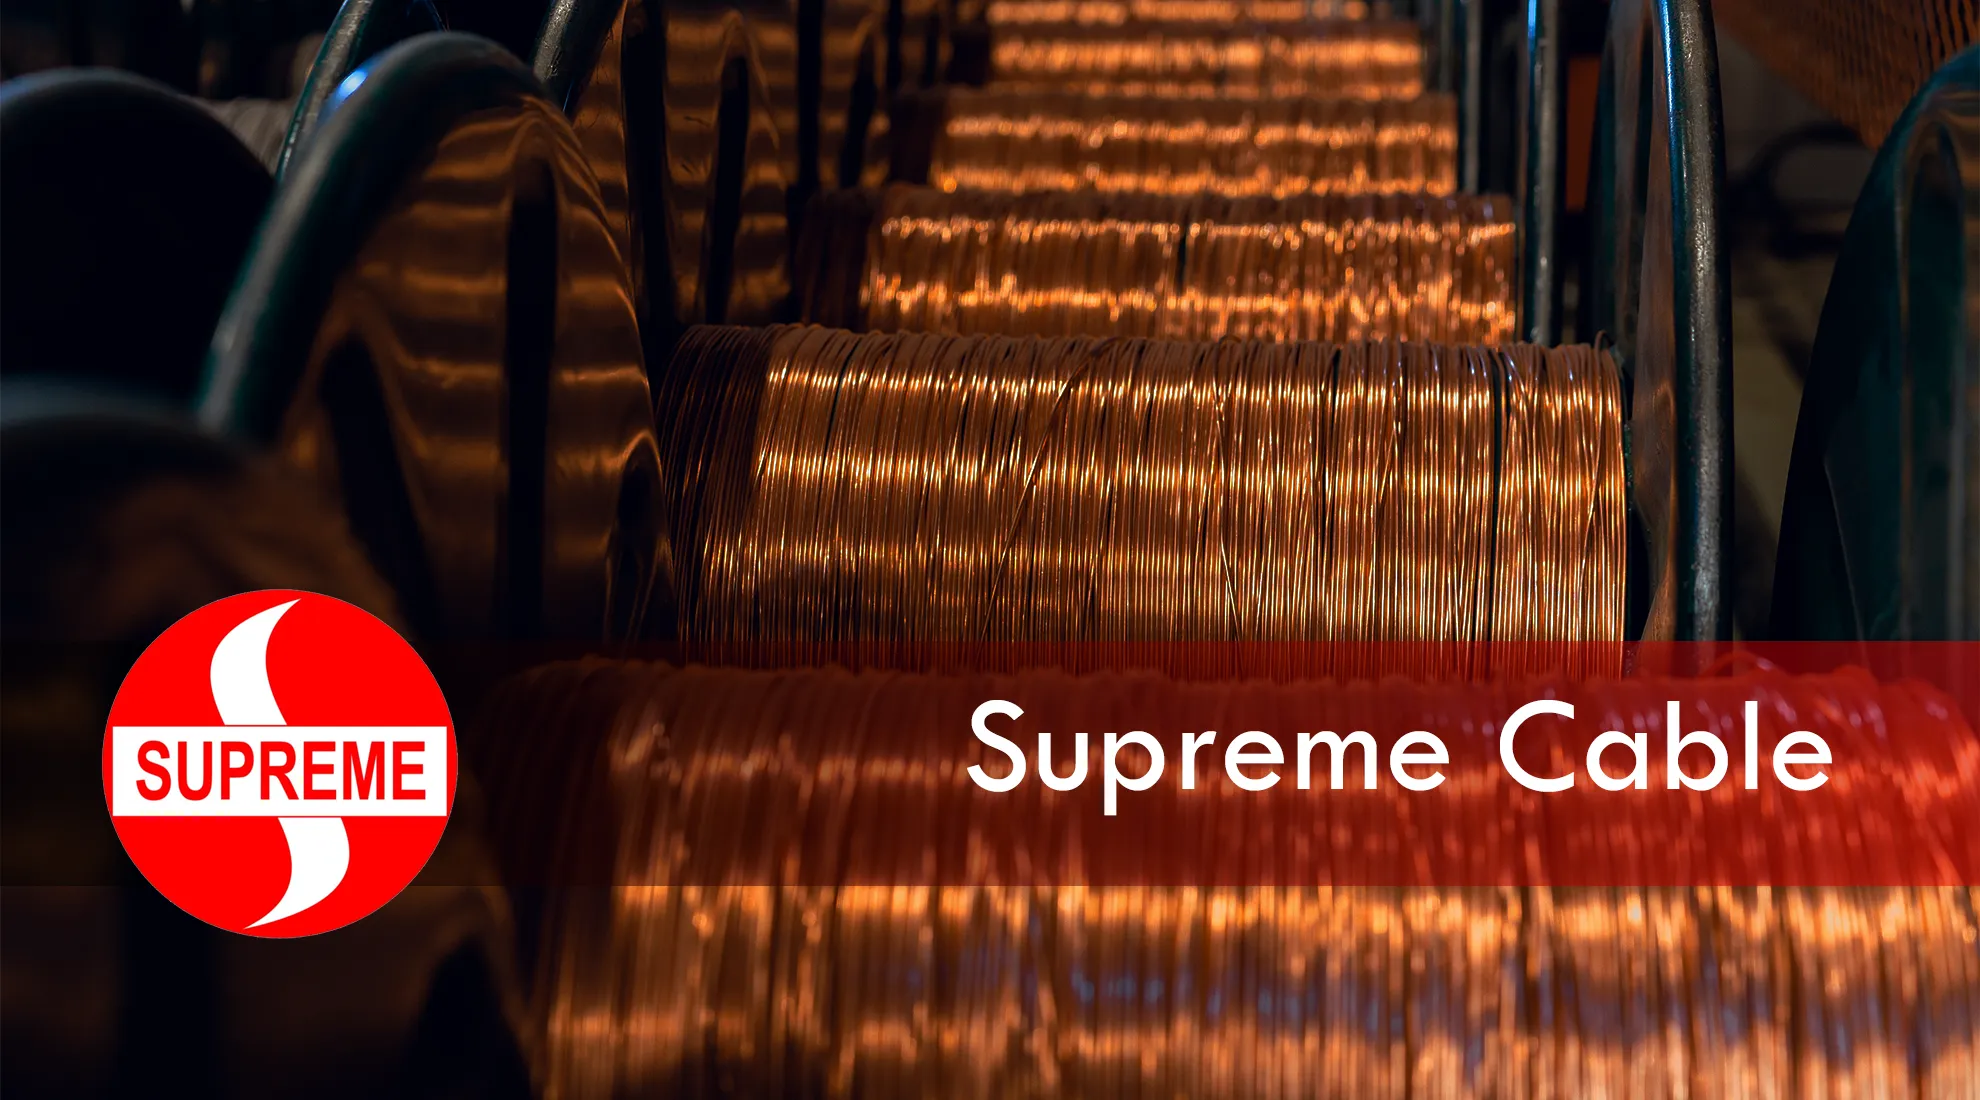 Supreme Cable image